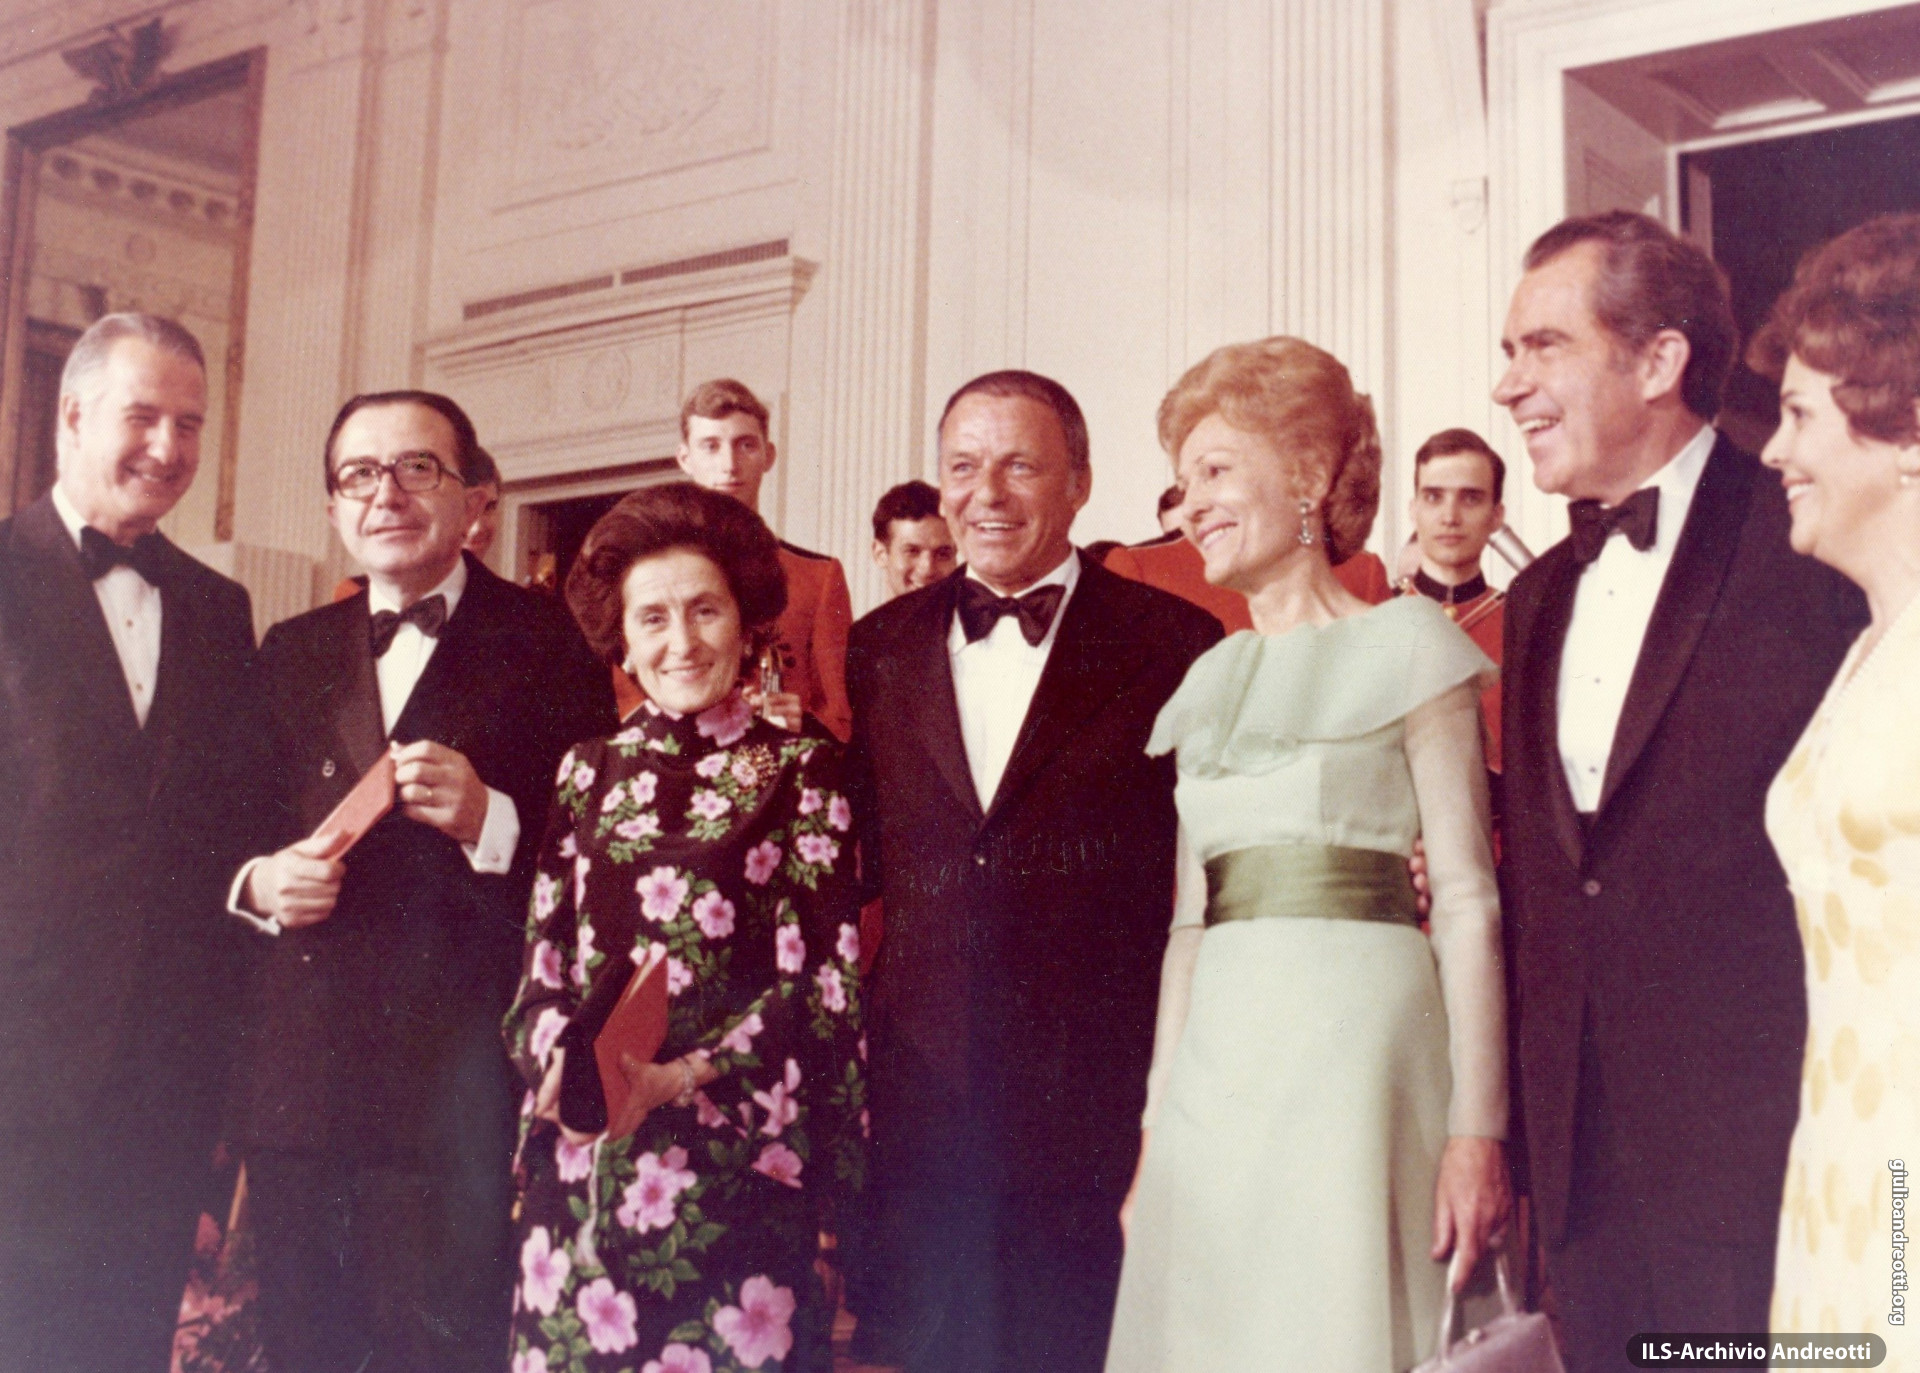 Visita di Andreotti in USA nell'aprile del 1973. Giulio e Livia Andreotti alla cena di gala con Frank Sinatra, il Presidente Nixon, il suo vice Spiro Agnew e le consorti.